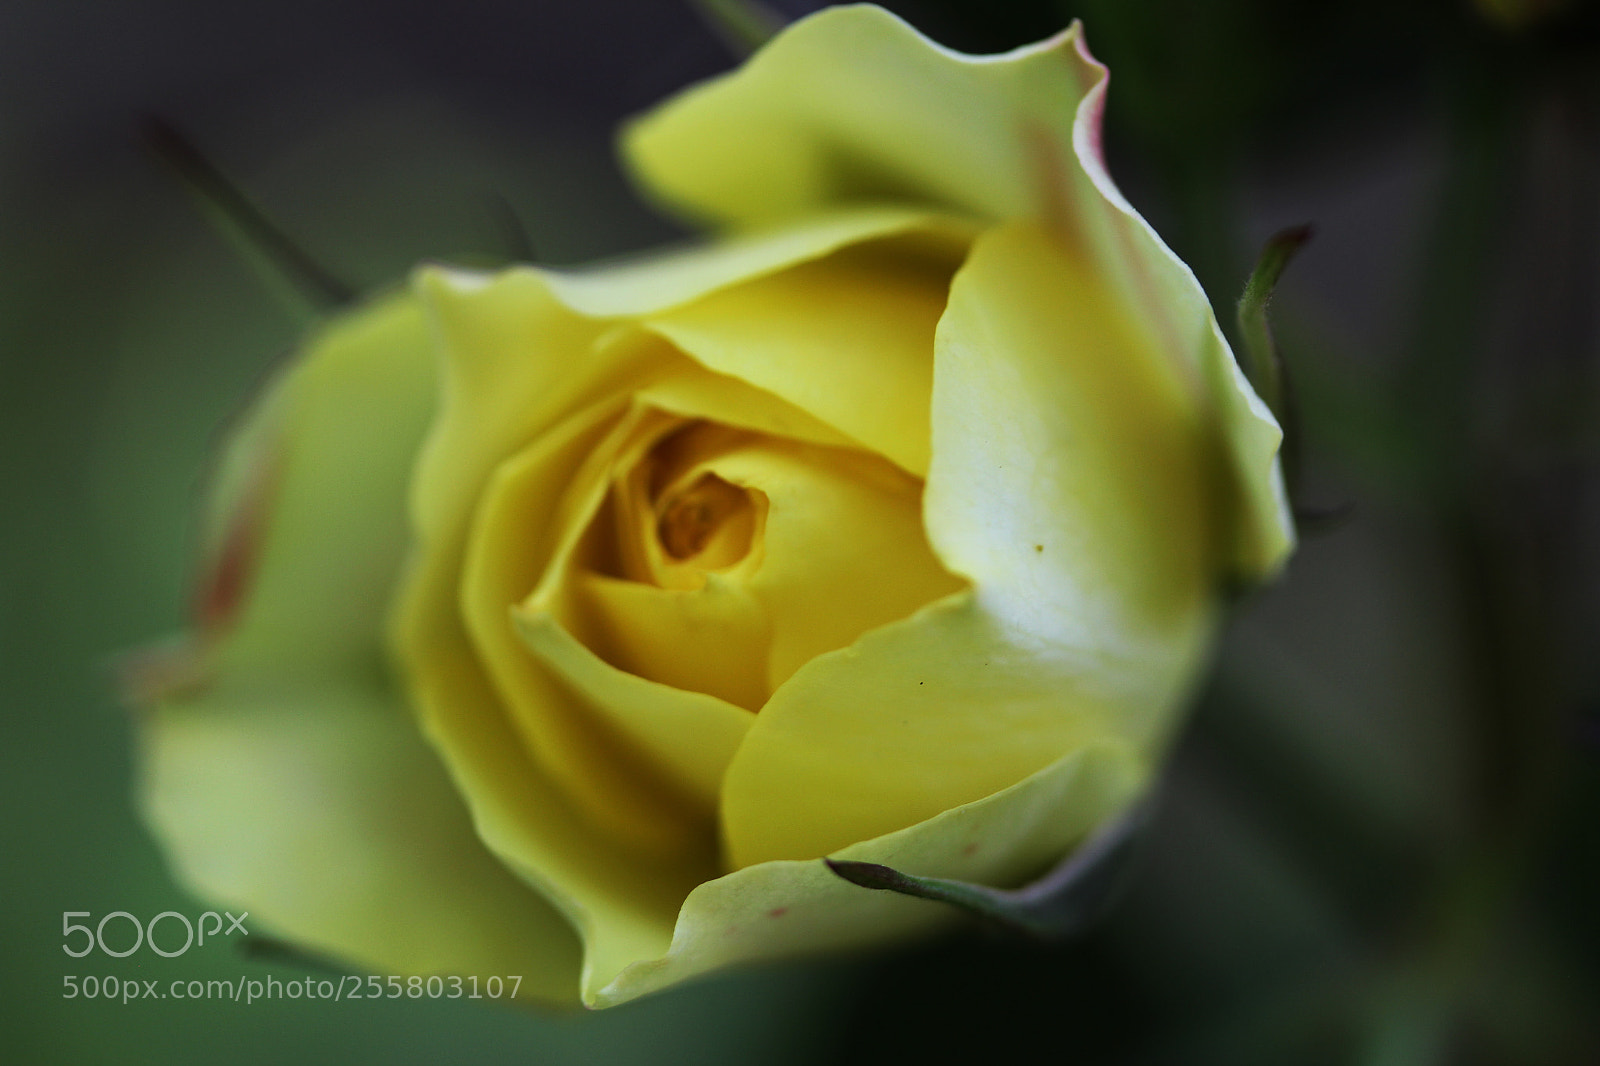 Canon EOS 60D sample photo. Yellow rose garden photography